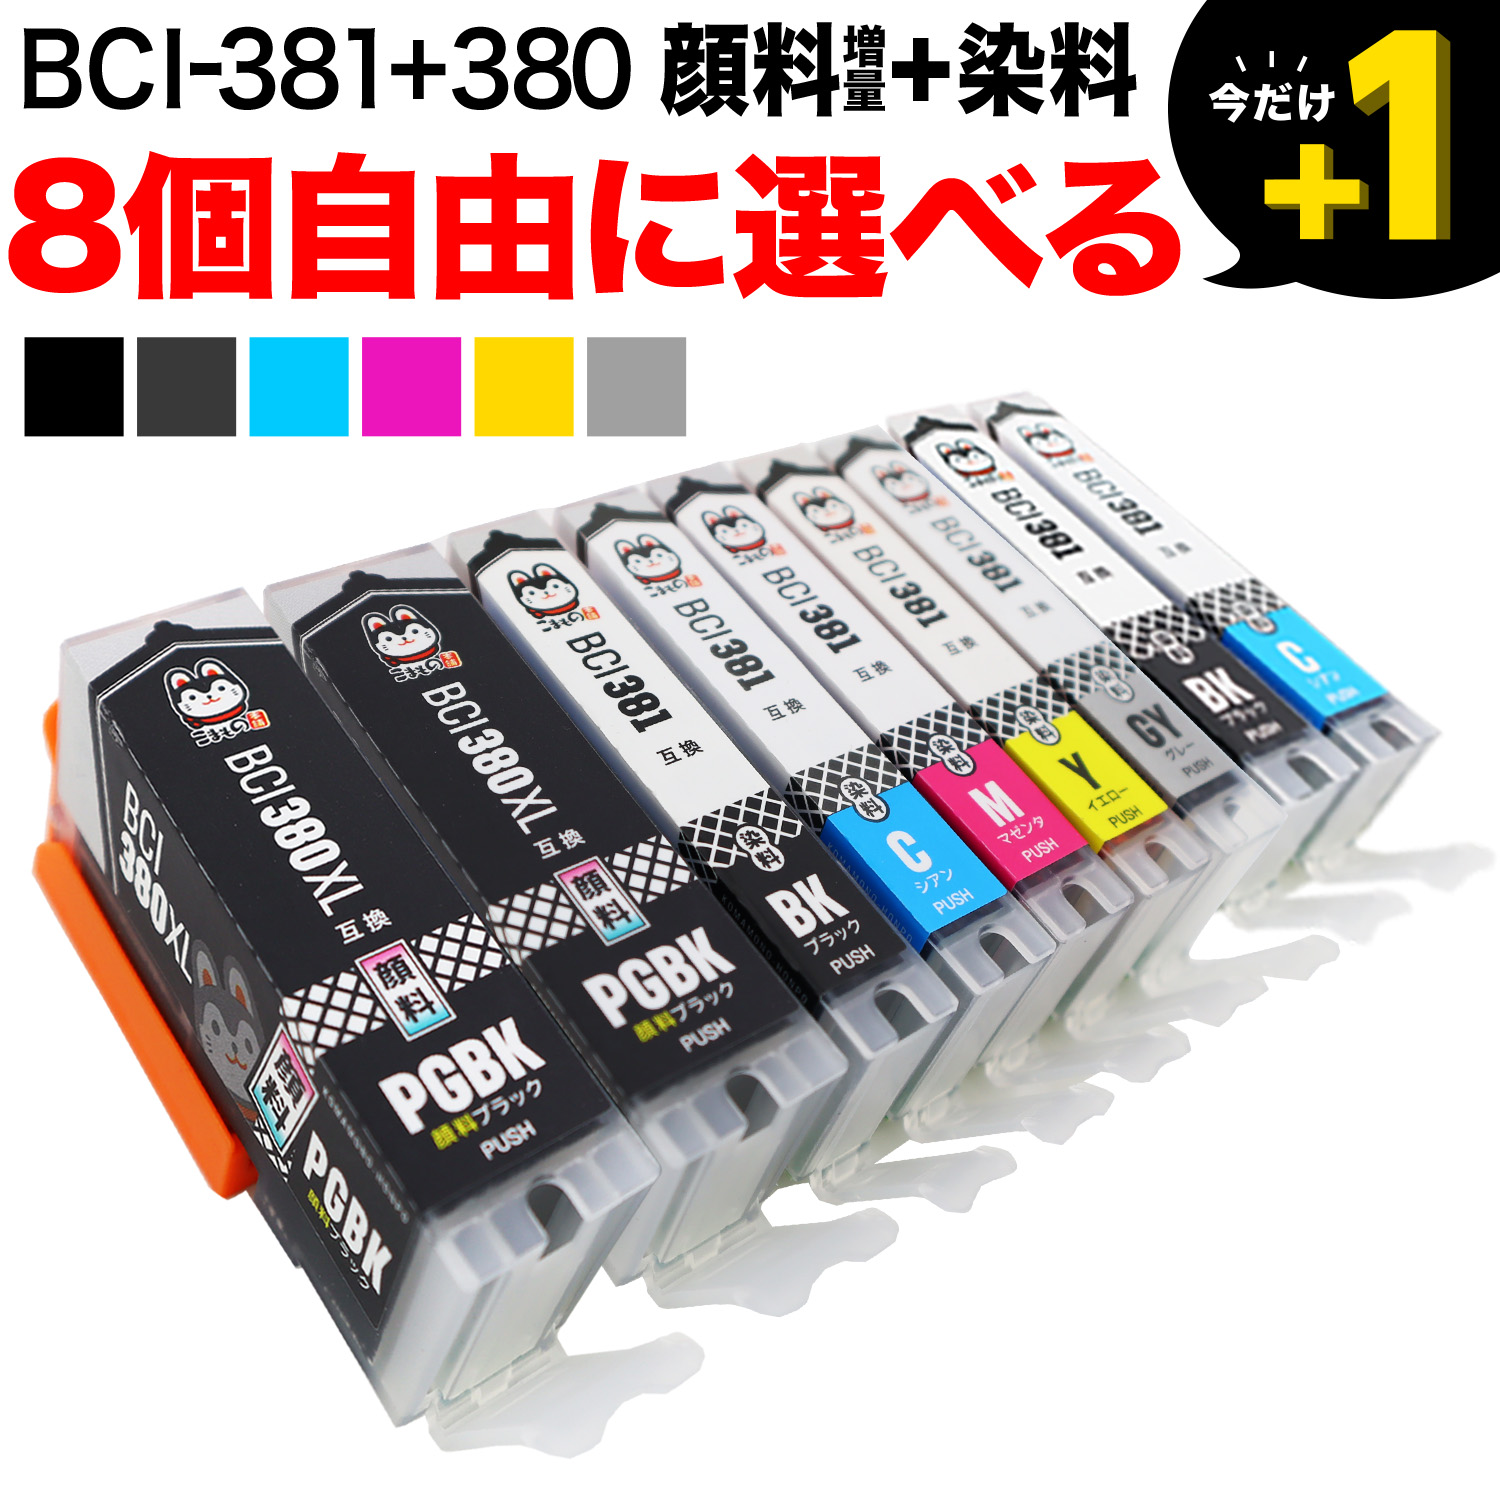 BCI-381+380 キヤノン用 互換インク 自由選択8個セット フリー